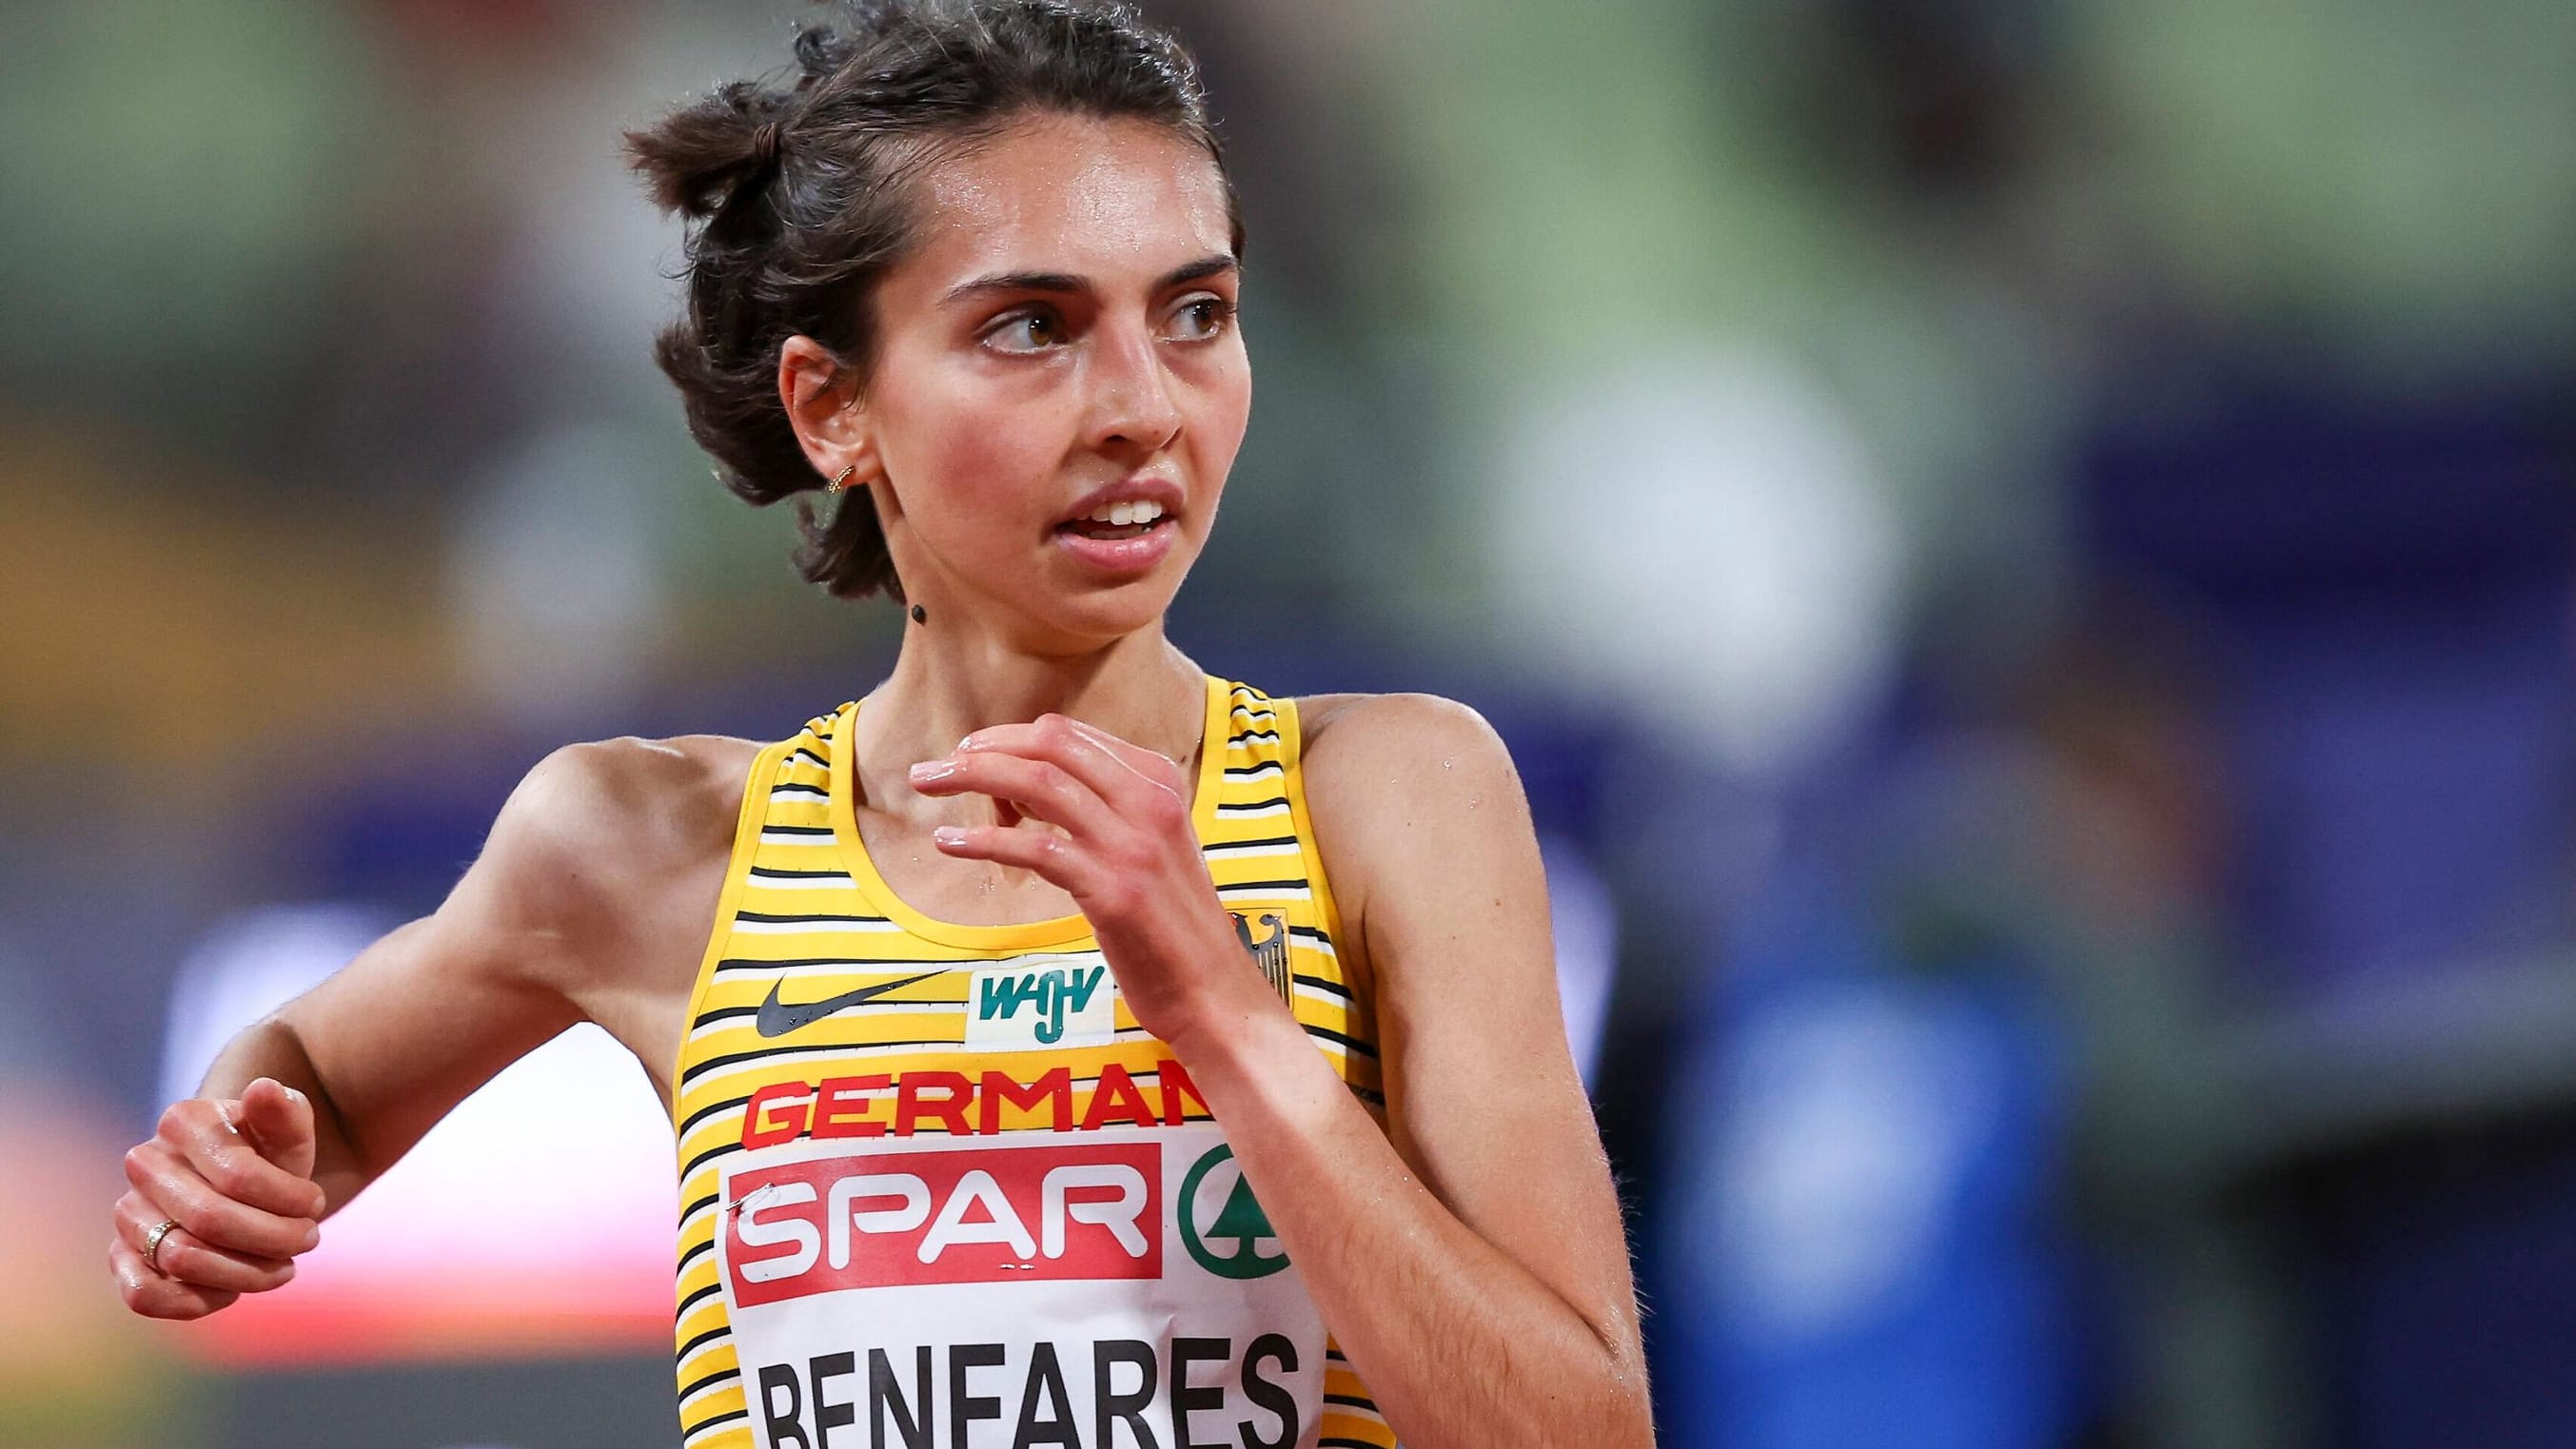 Leichtathletik: Langstreckenläuferin Sara Benfares beendet Karriere